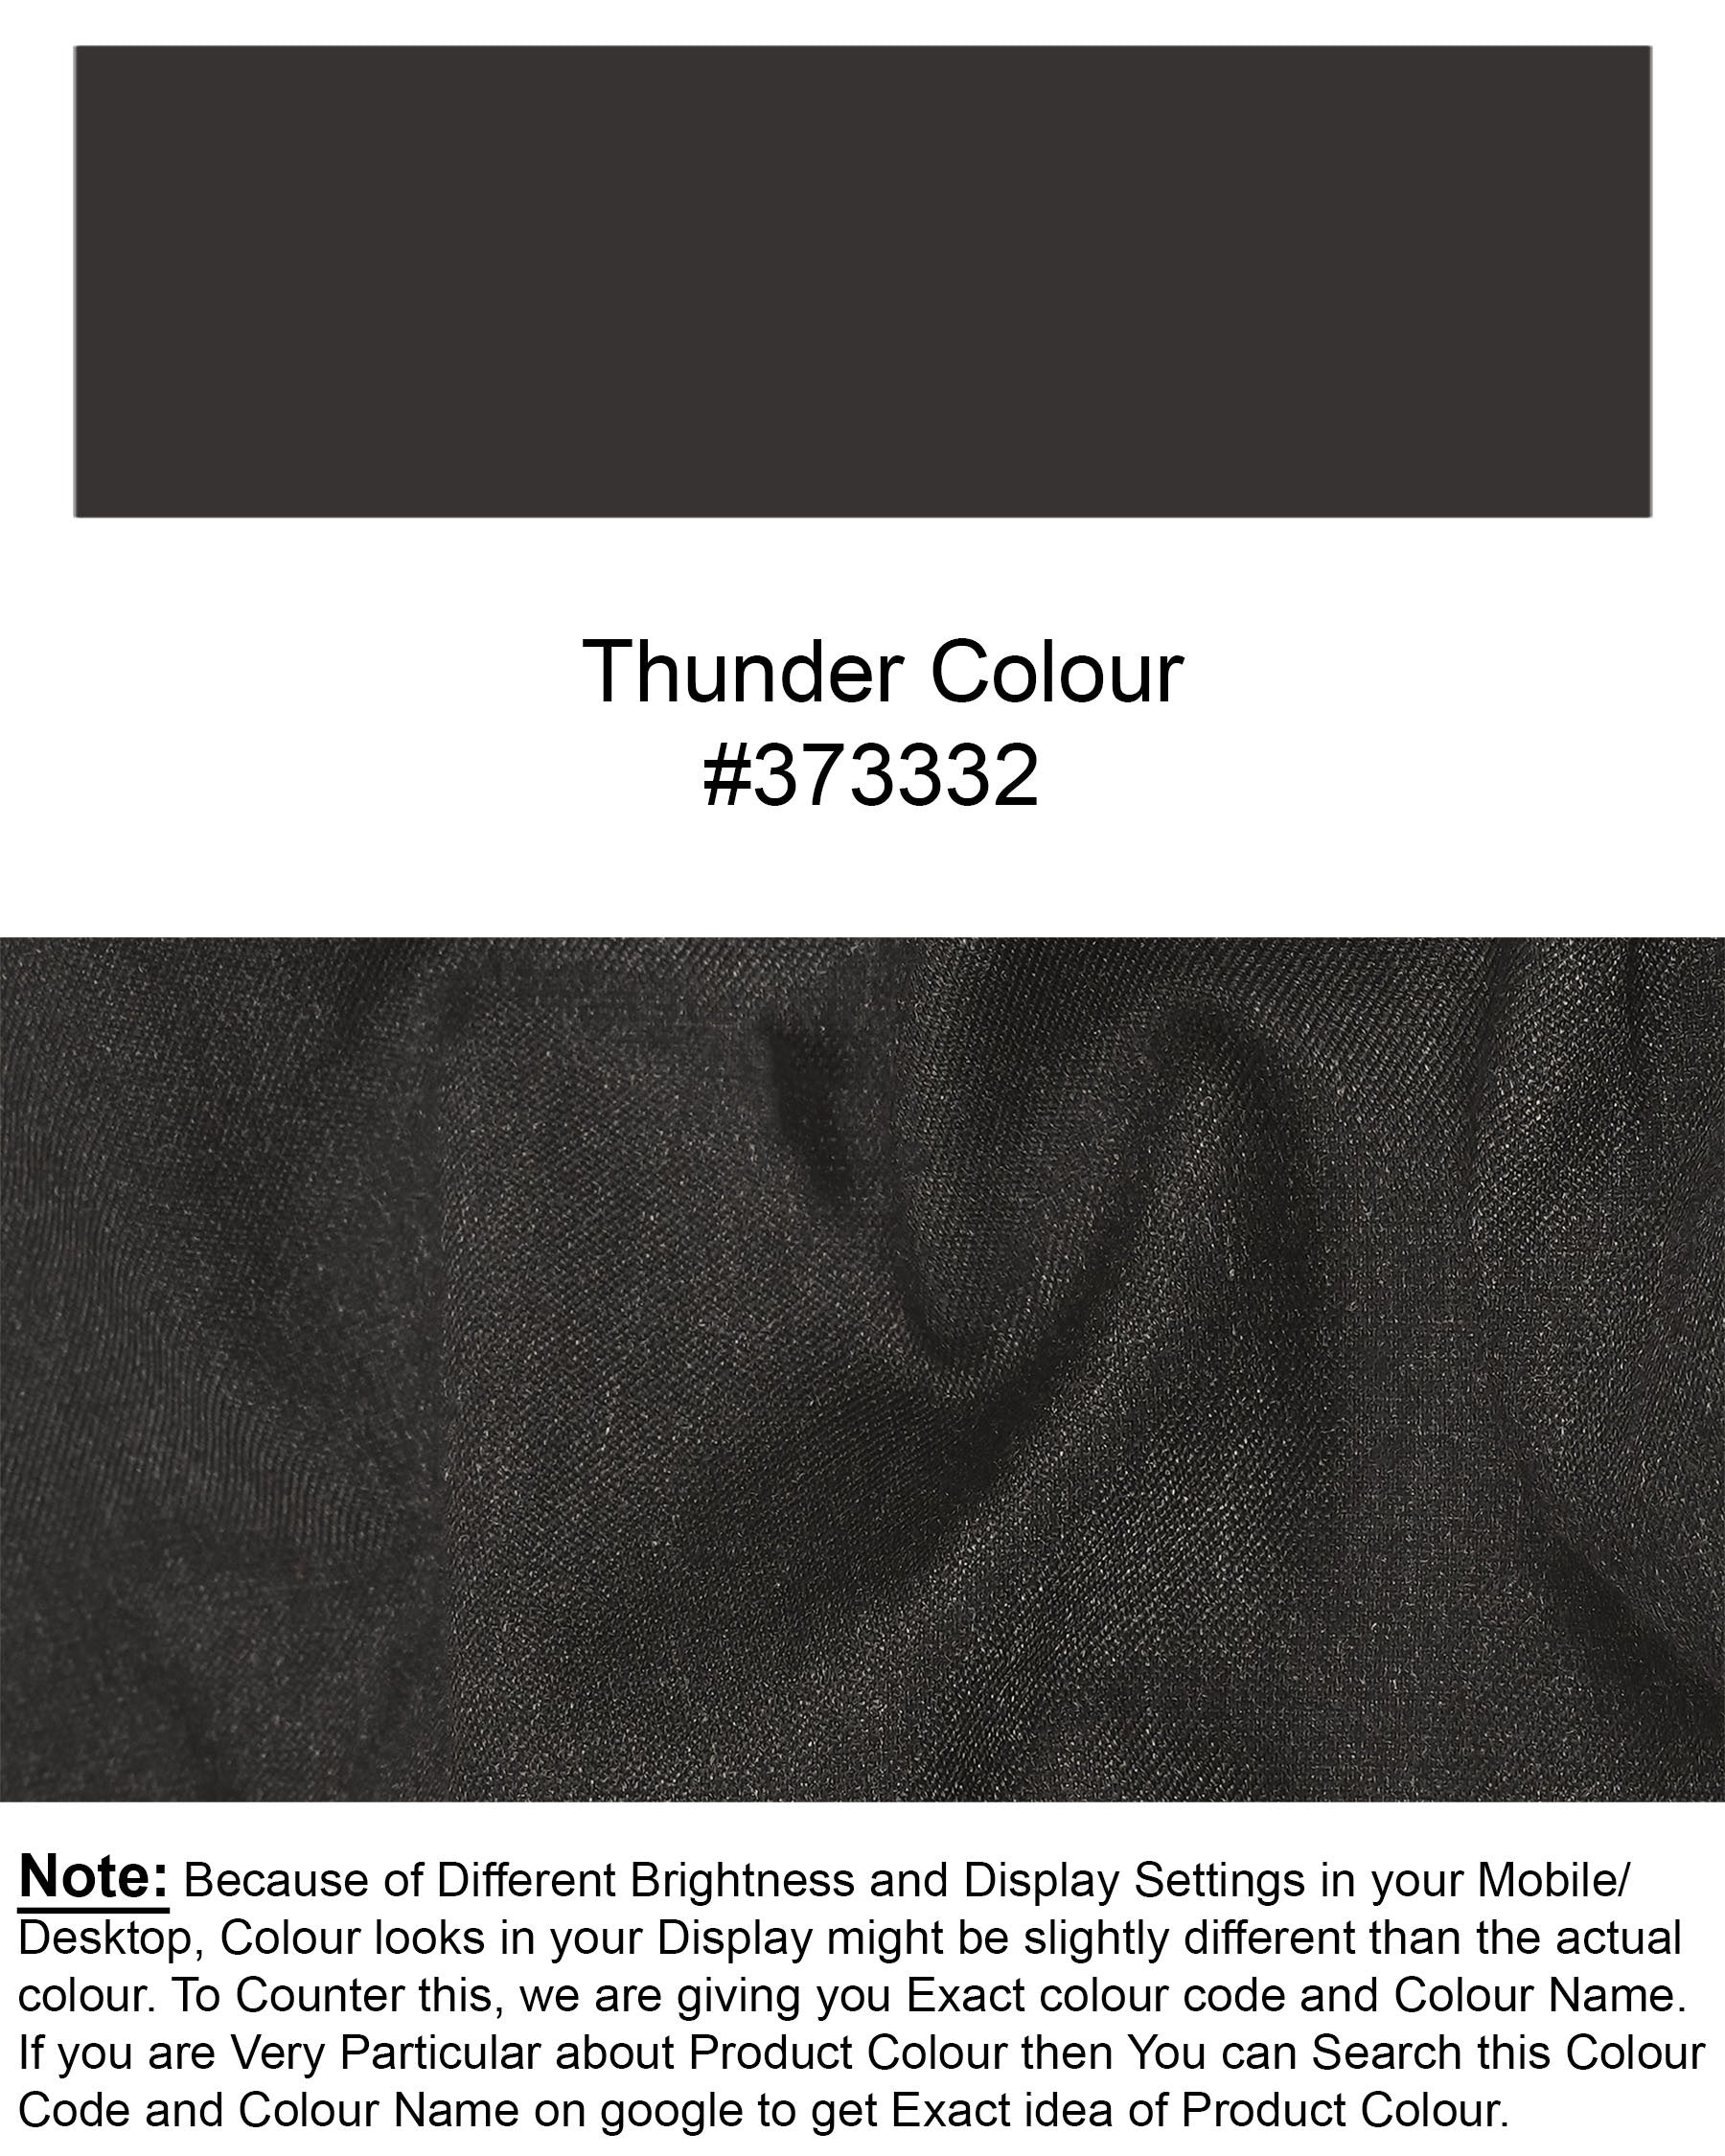 Thunder Gray Textured Pant T1960-28, T1960-30, T1960-32, T1960-34, T1960-36, T1960-38, T1960-40, T1960-42, T1960-44